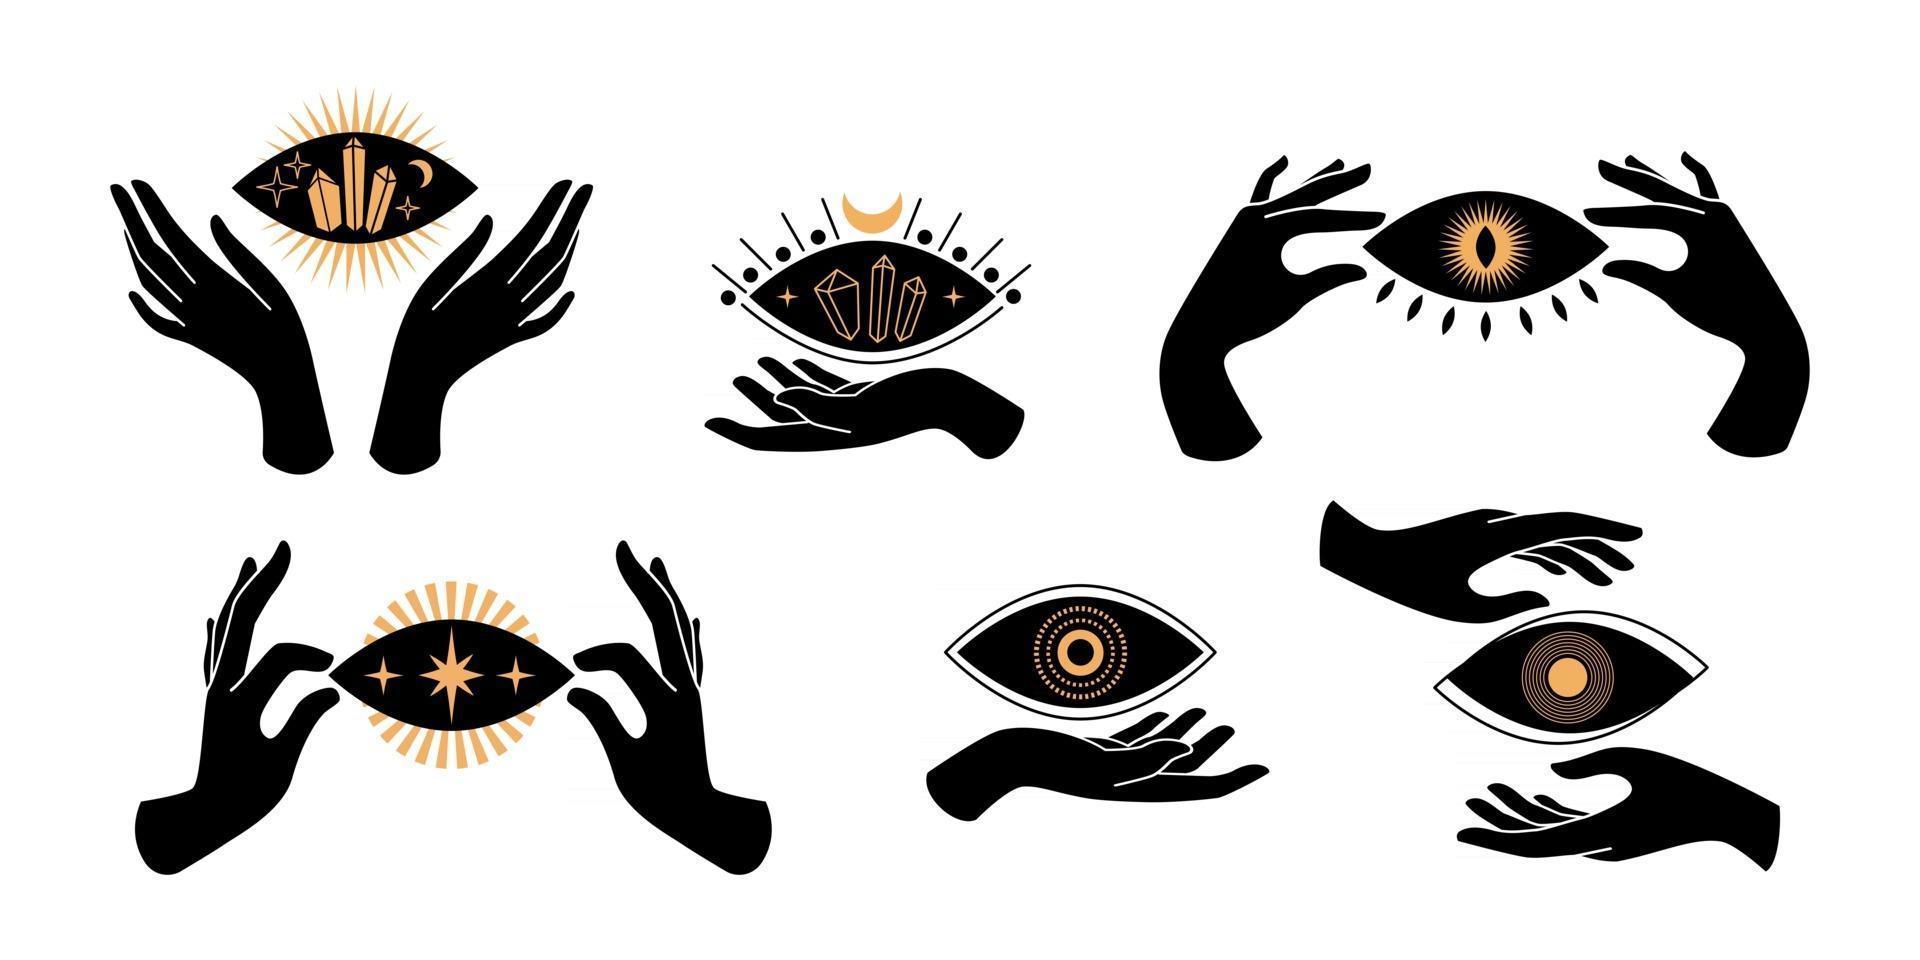 boho manos negras siluetas iconos esotéricos con símbolos espirituales luna creciente, estrella, ojo, sol. concepto místico femenino negro. vector ilustración plana. diseño para estampados de camisetas, carteles, tatuajes